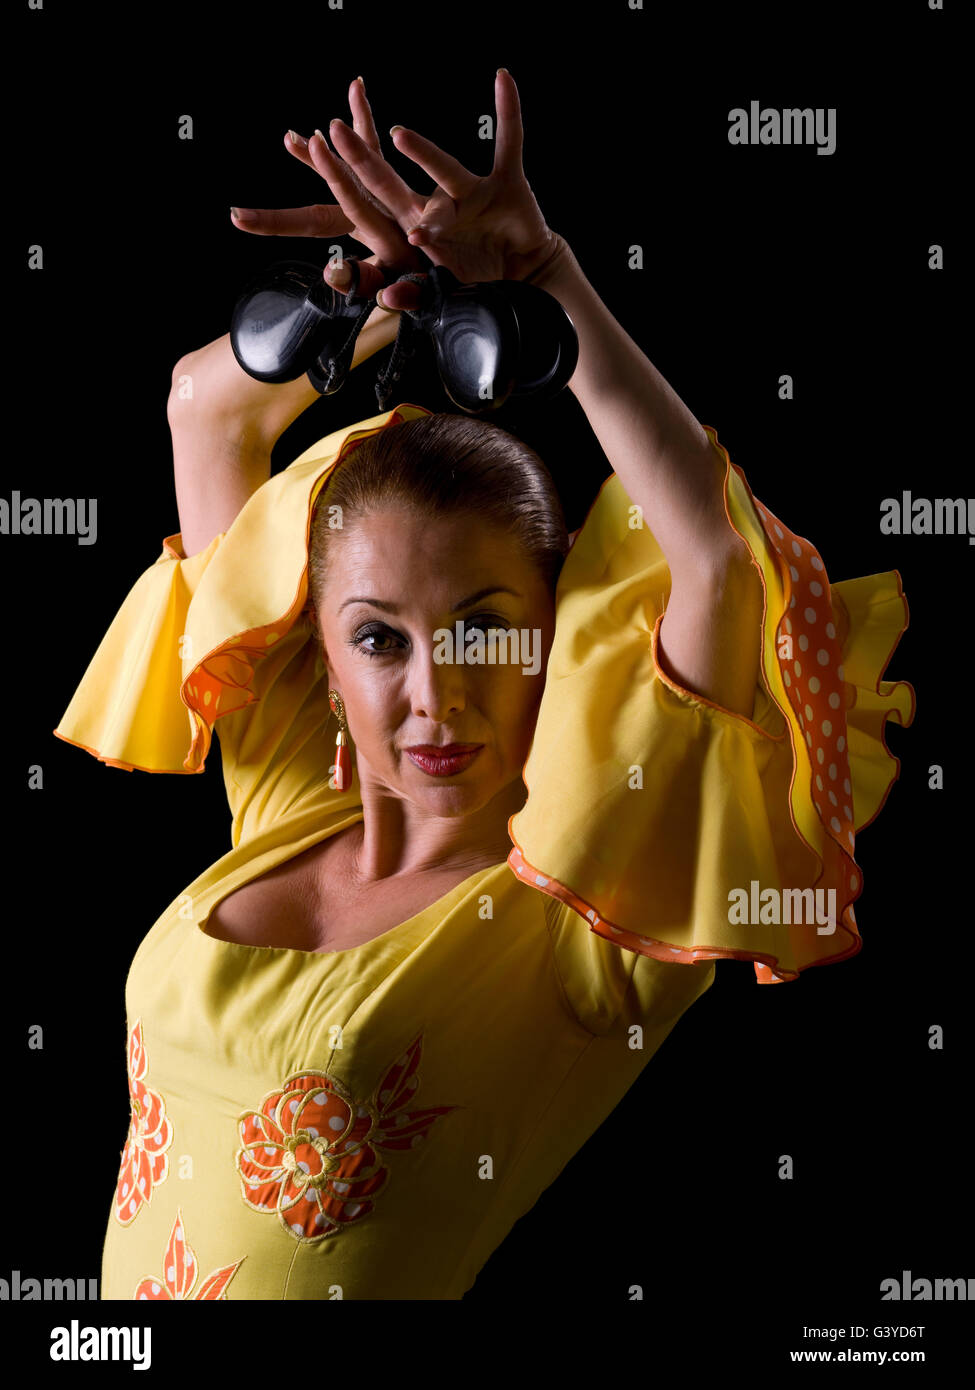 Femme espagnole, flamenco, regardant la caméra Banque D'Images